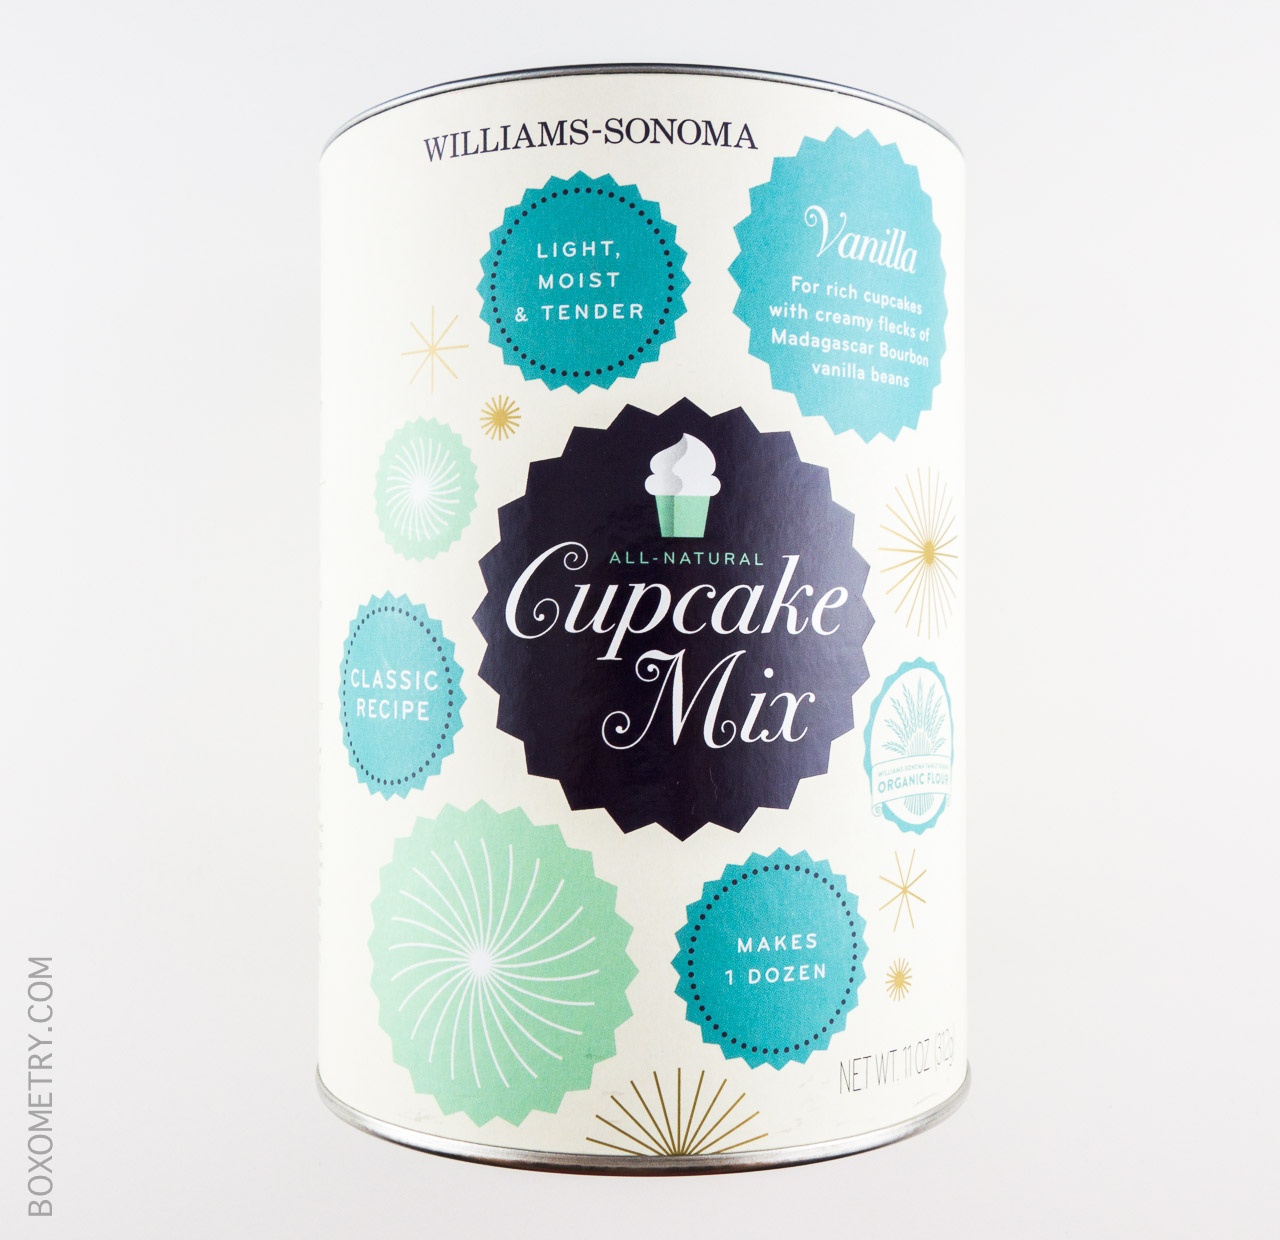 William-Sonoma Cupcake Mix in Vanilla Bean